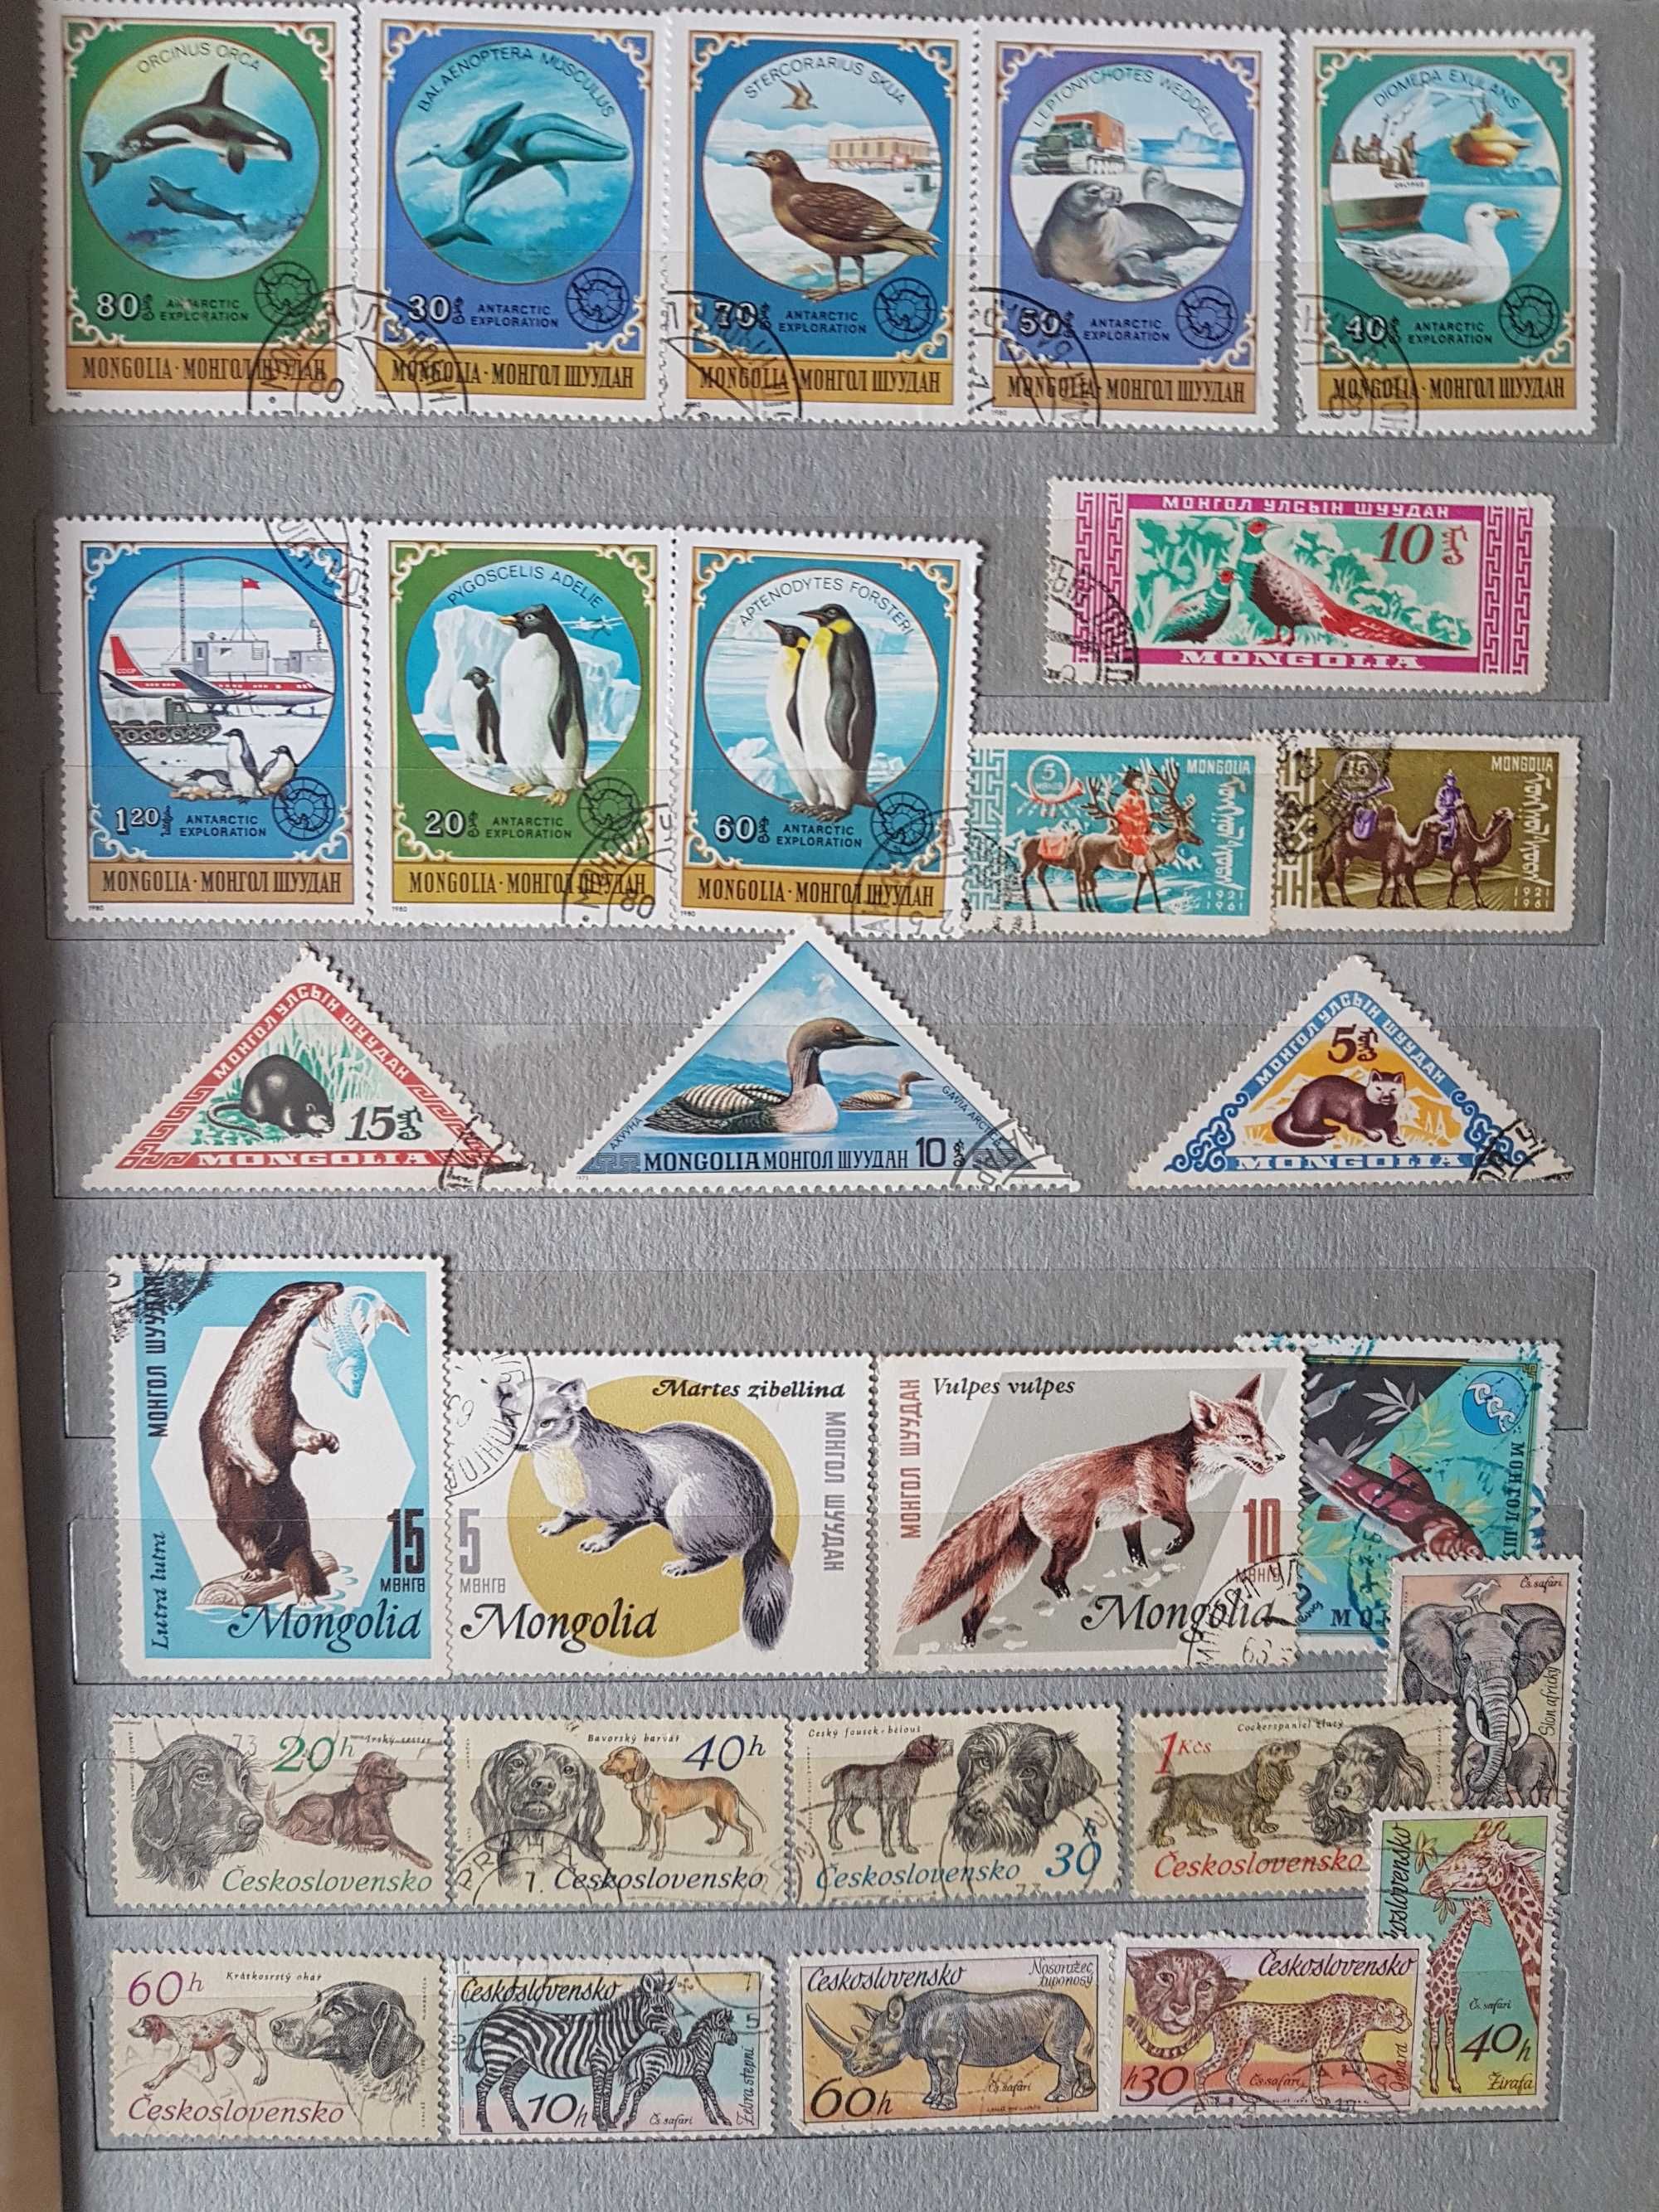 Продаются почтовые марки Кубы, Монголии и др стран.